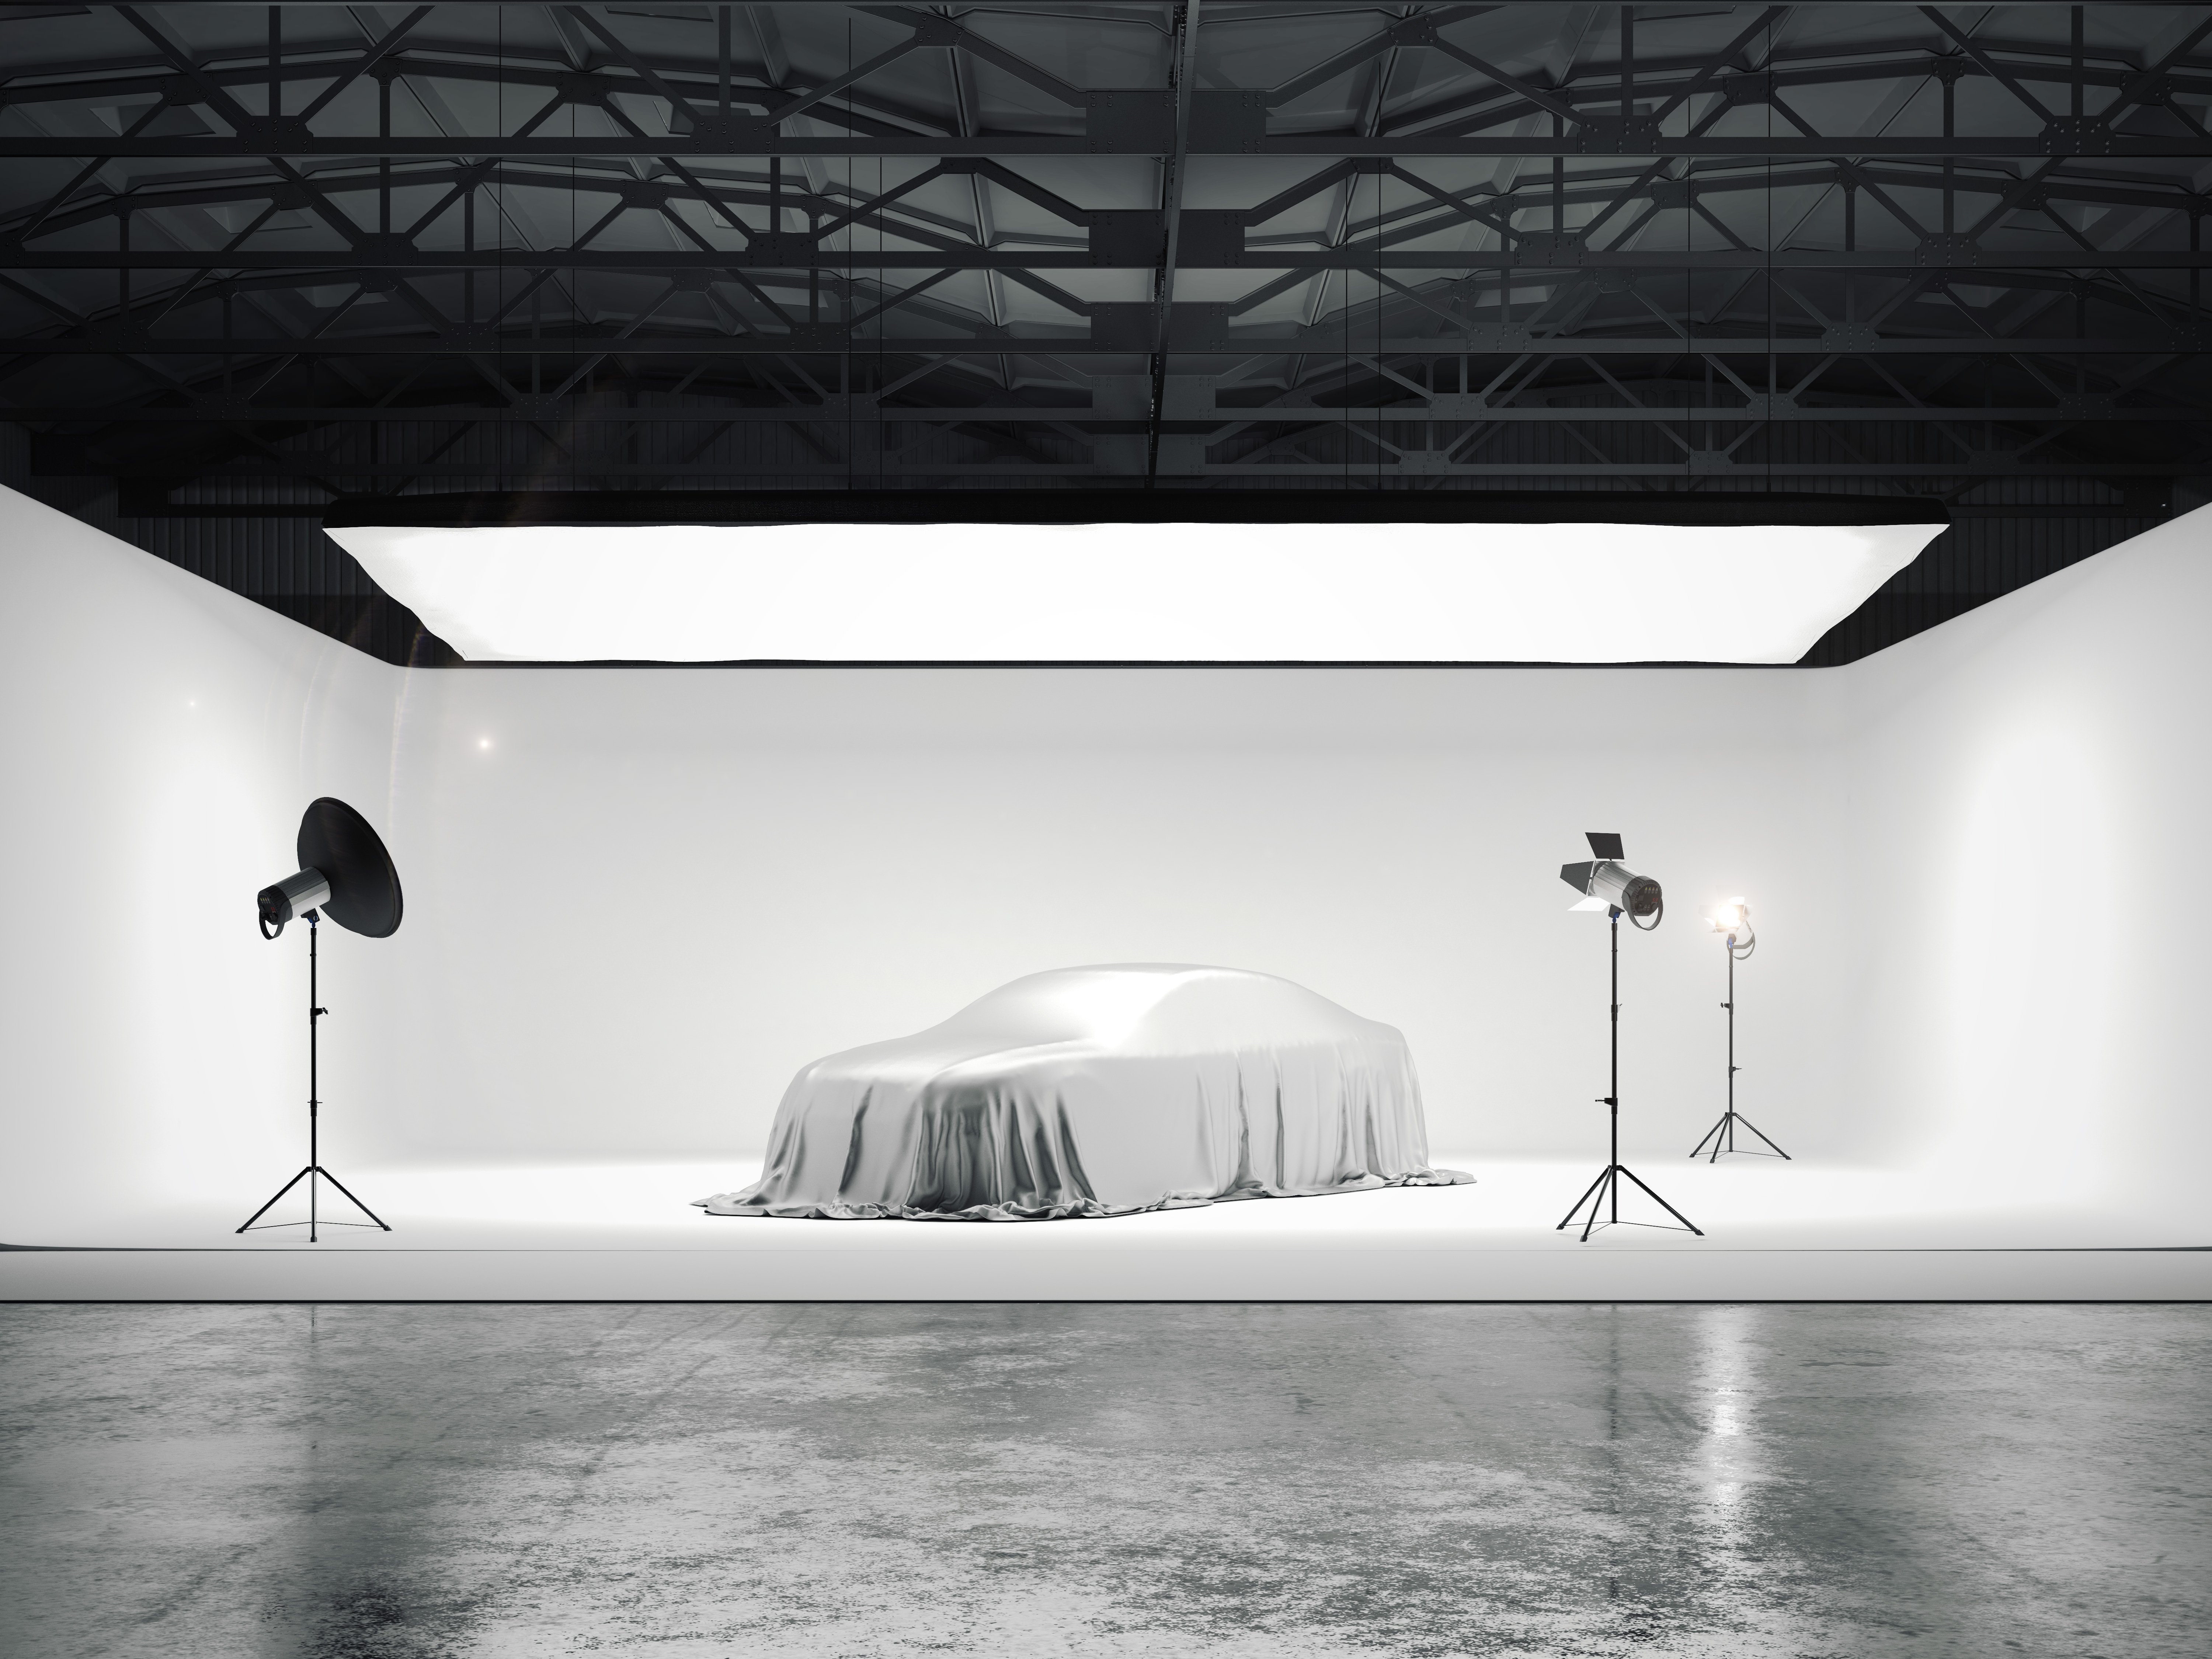 Grand studio photographique avec une voiture et plusieurs sources lumineuses